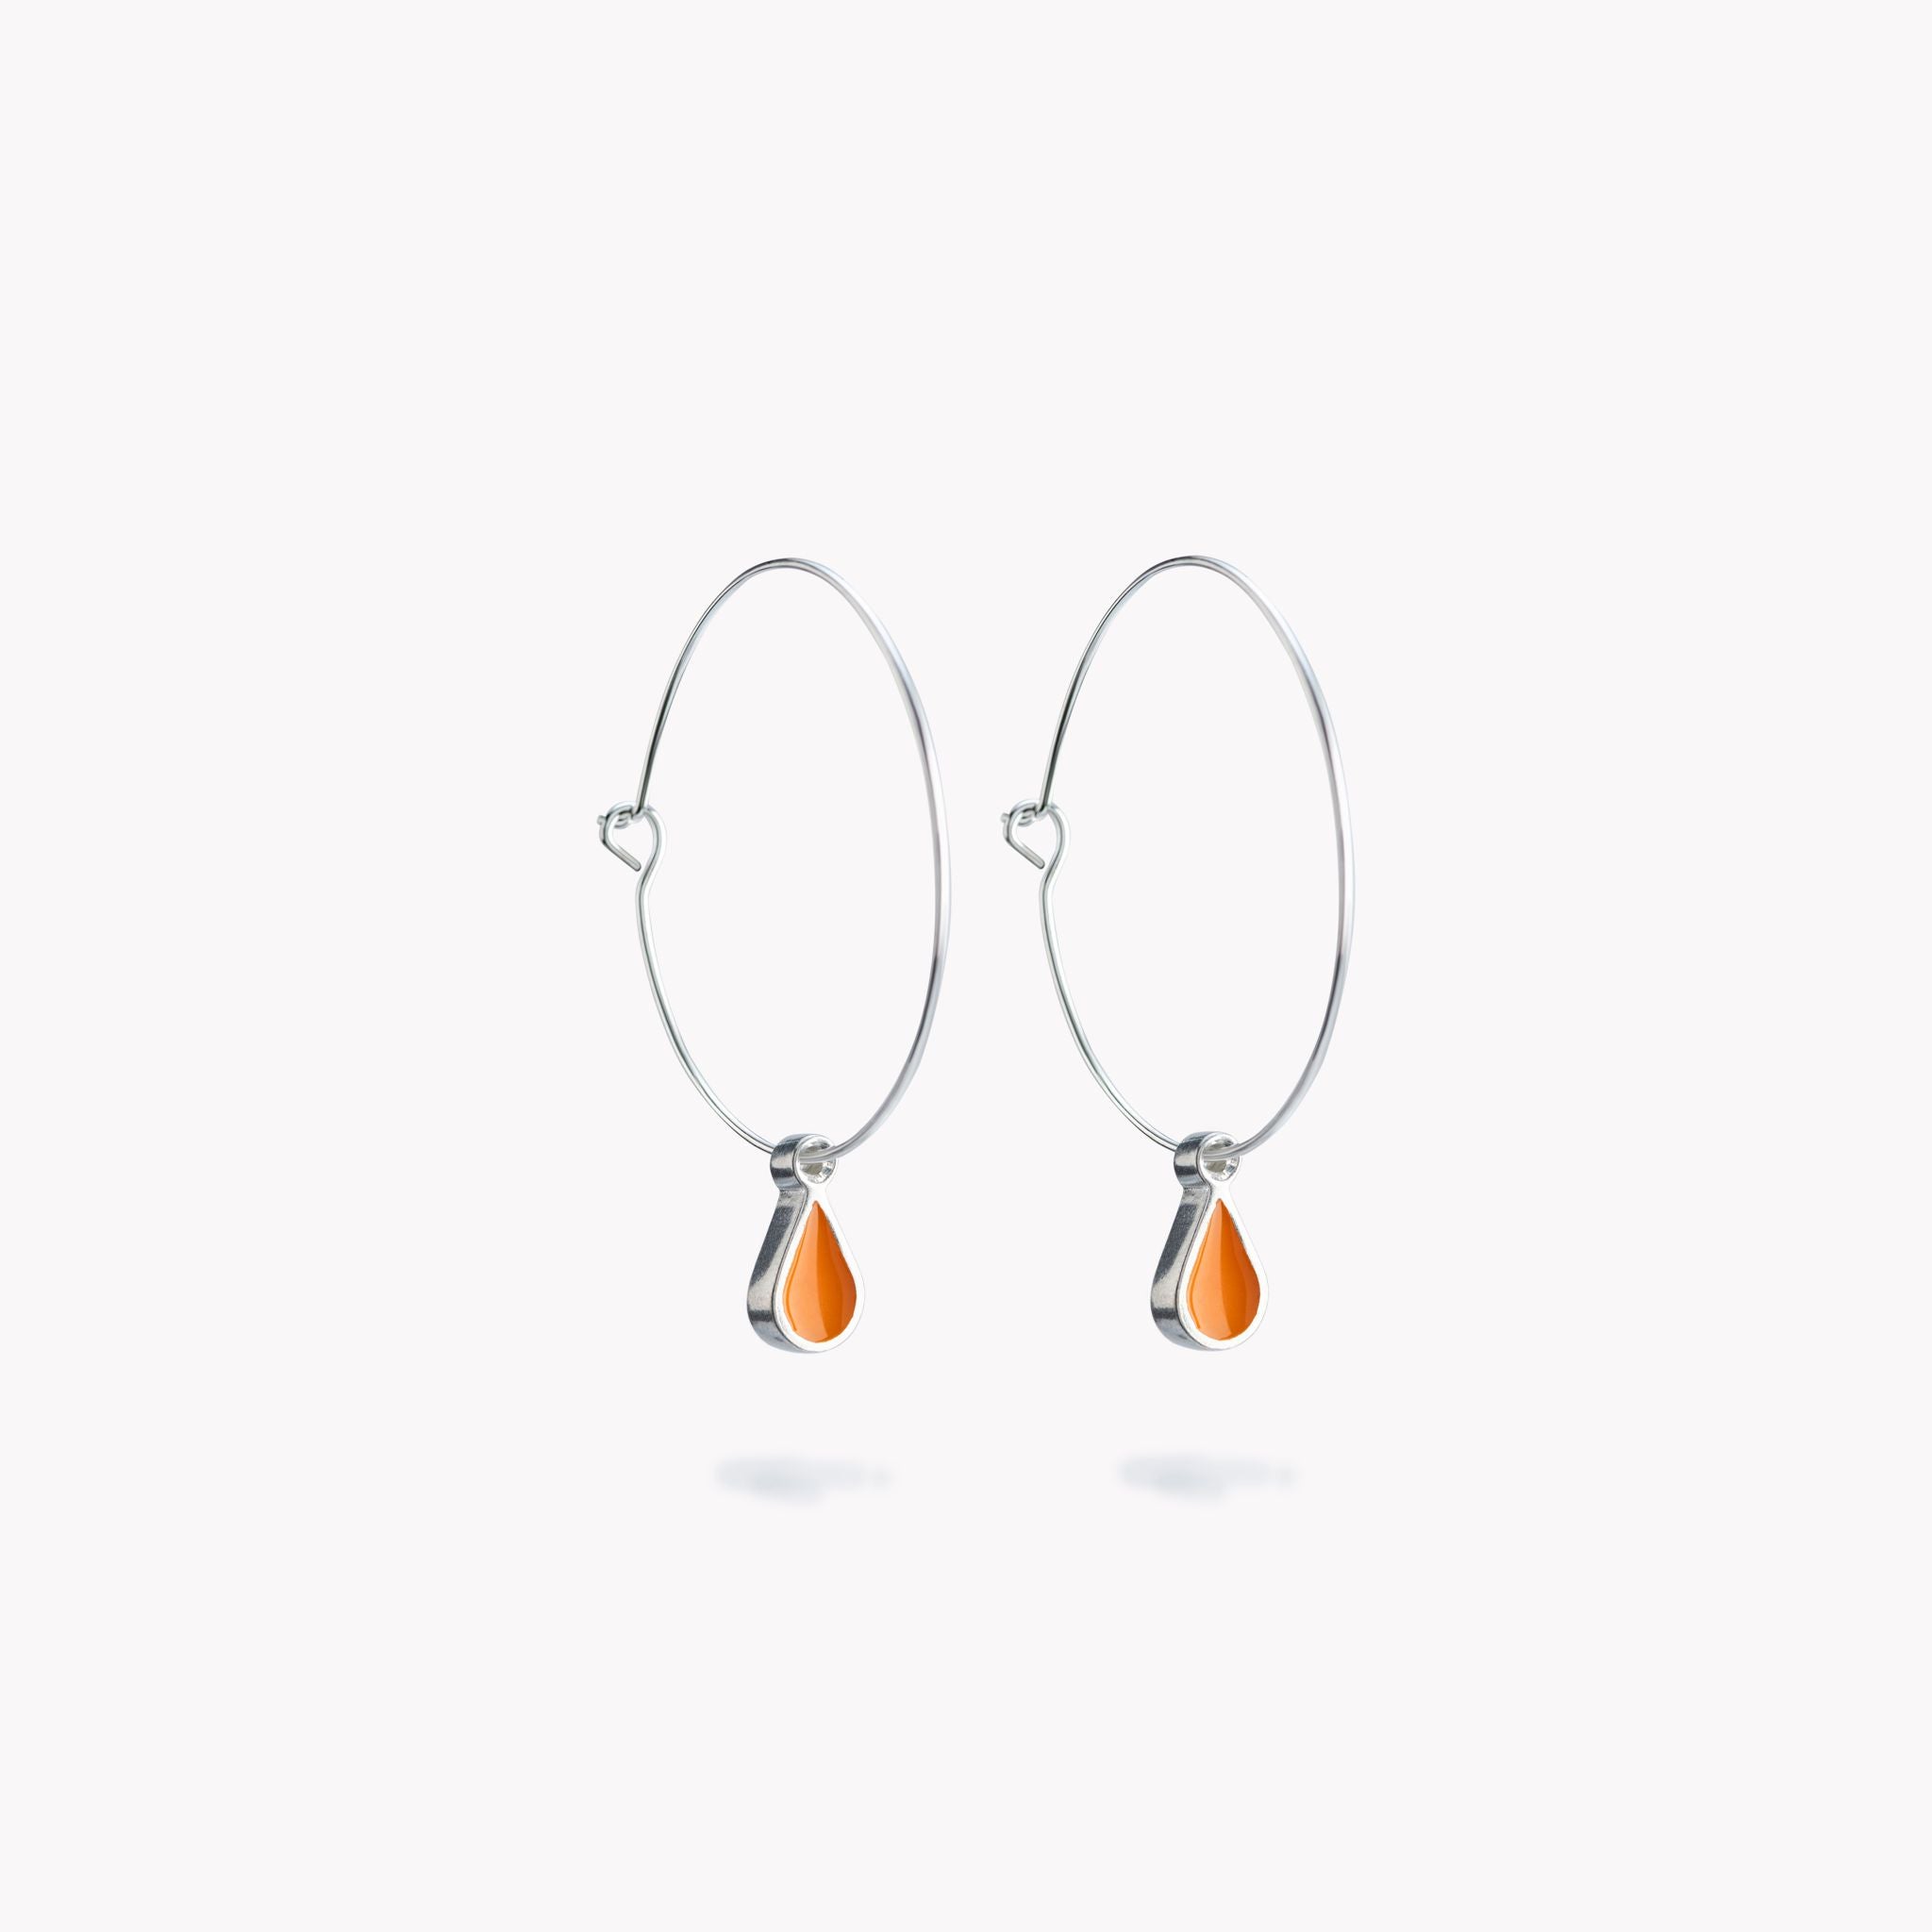 A simple pair of hoop earrings with orange hanging droplets.